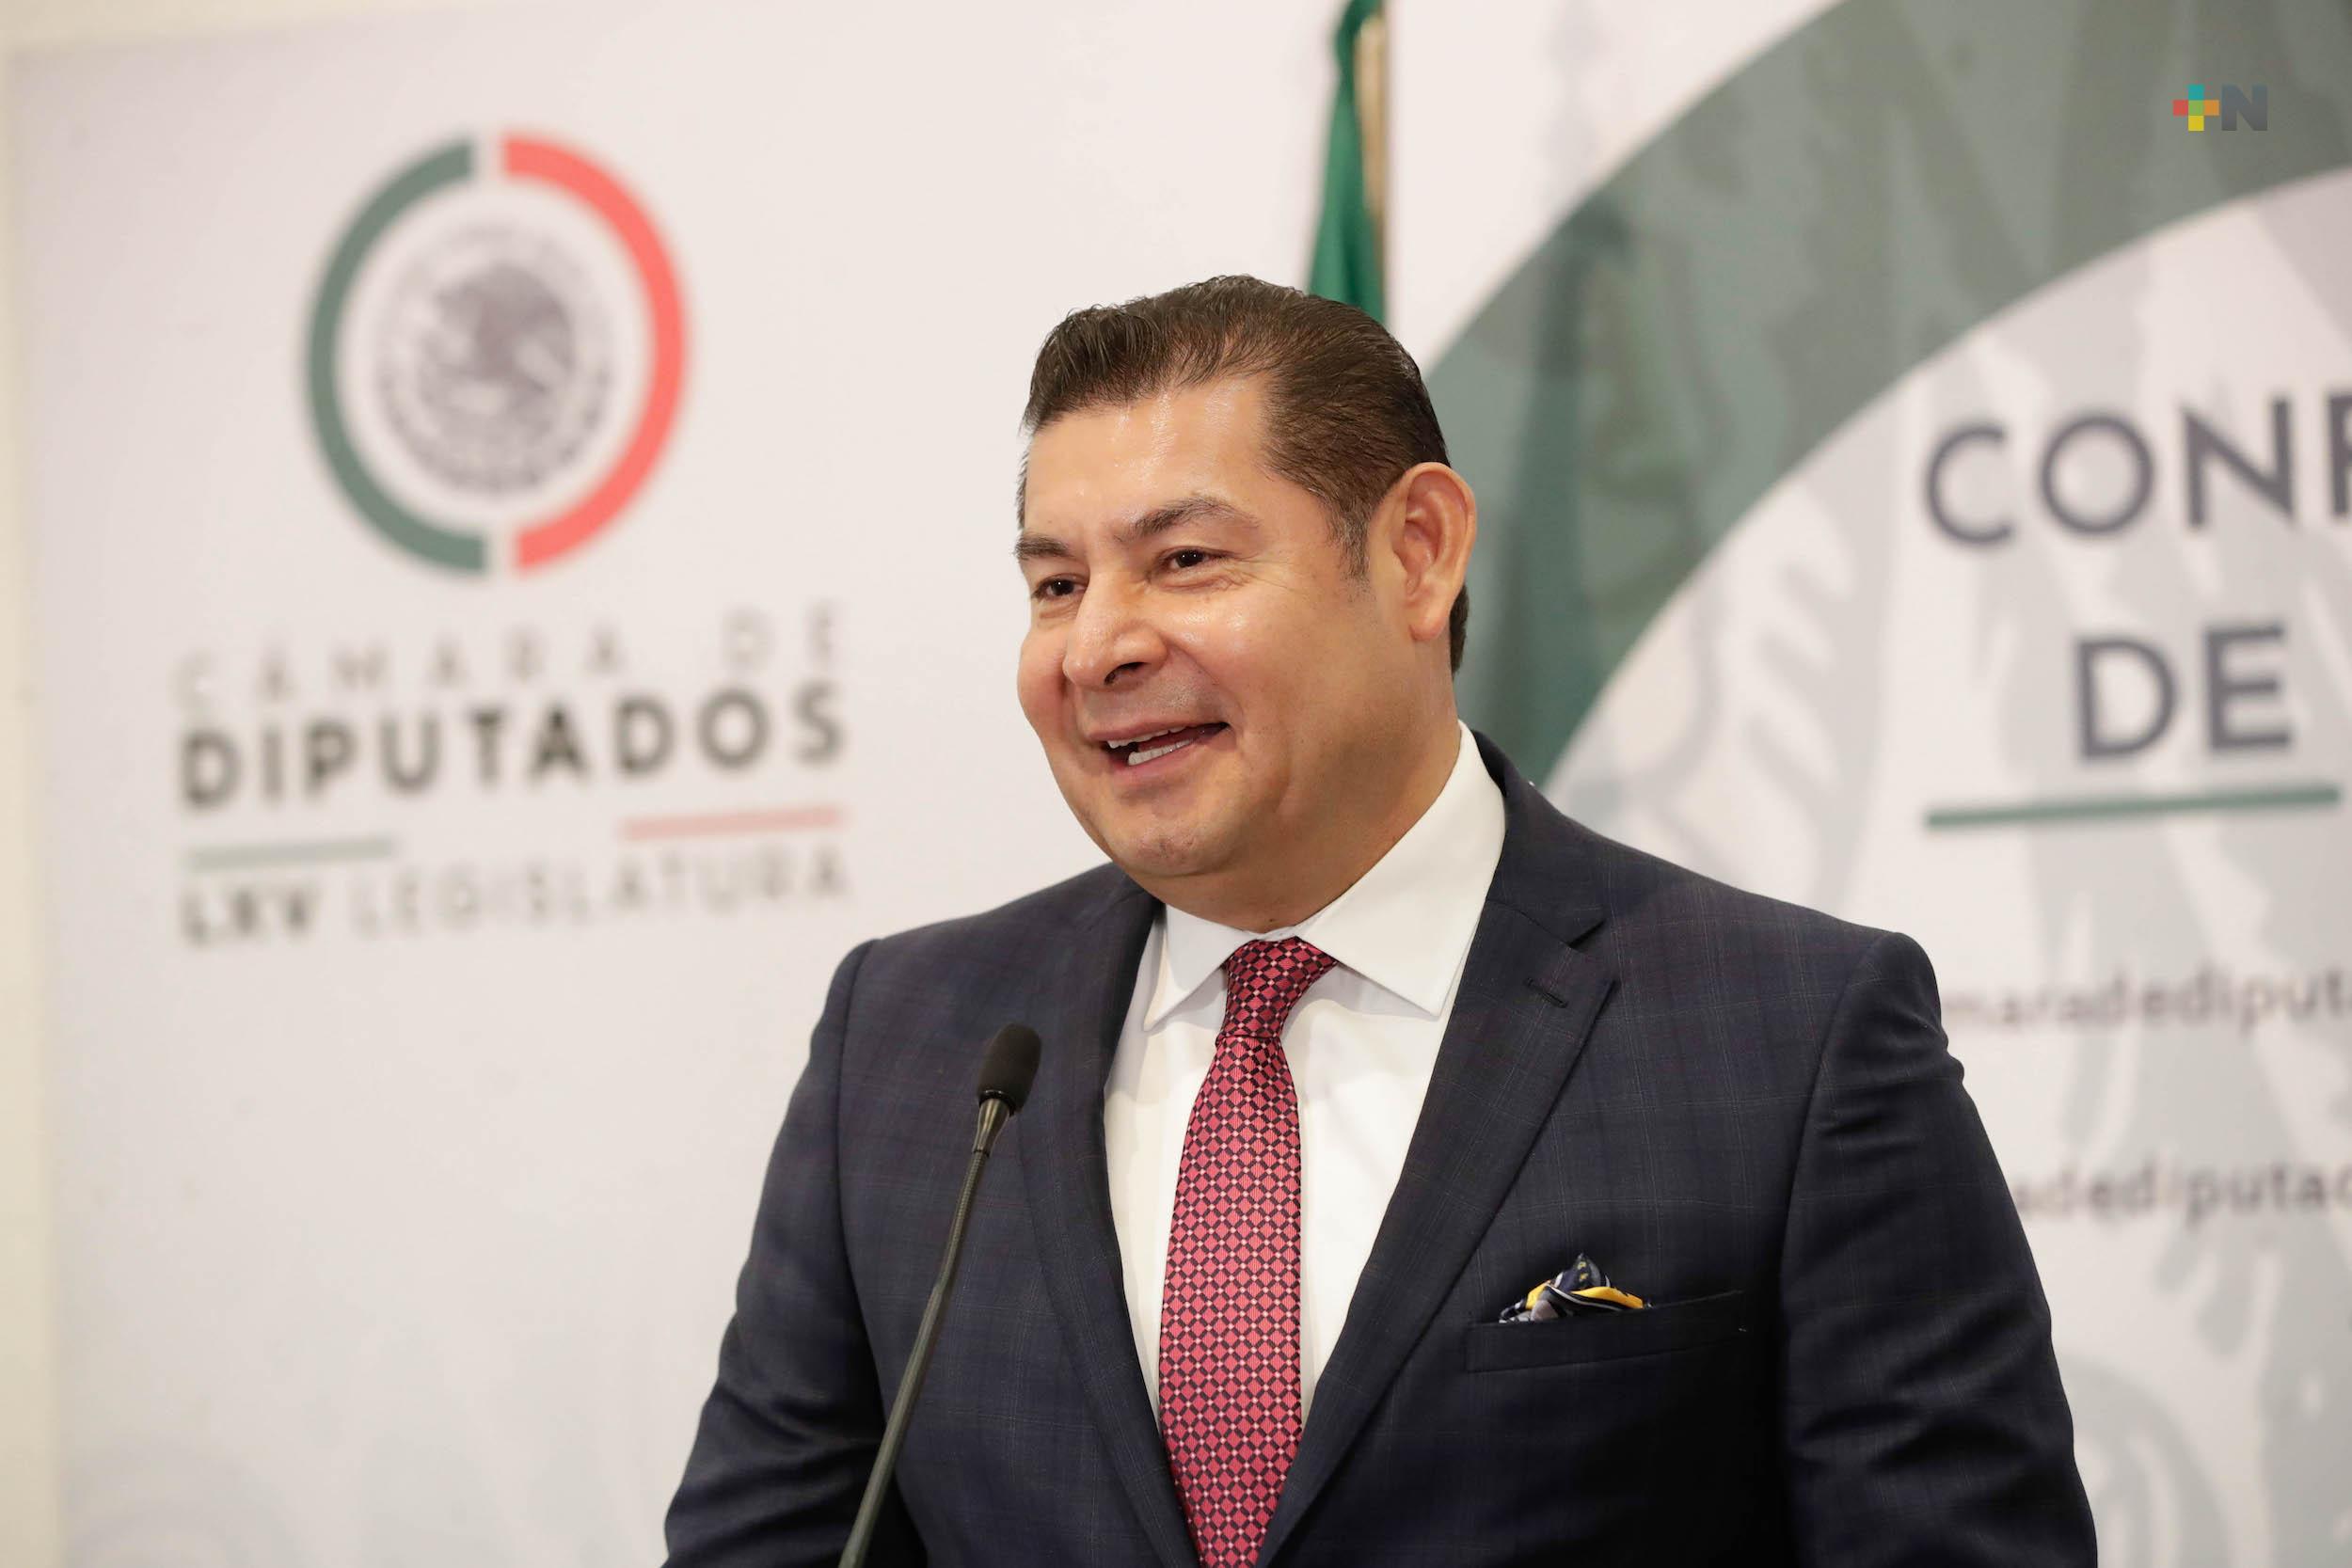 Ante expulsión de embajador de México, nuestro país envía mensaje de tolerancia: Alejandro Armenta